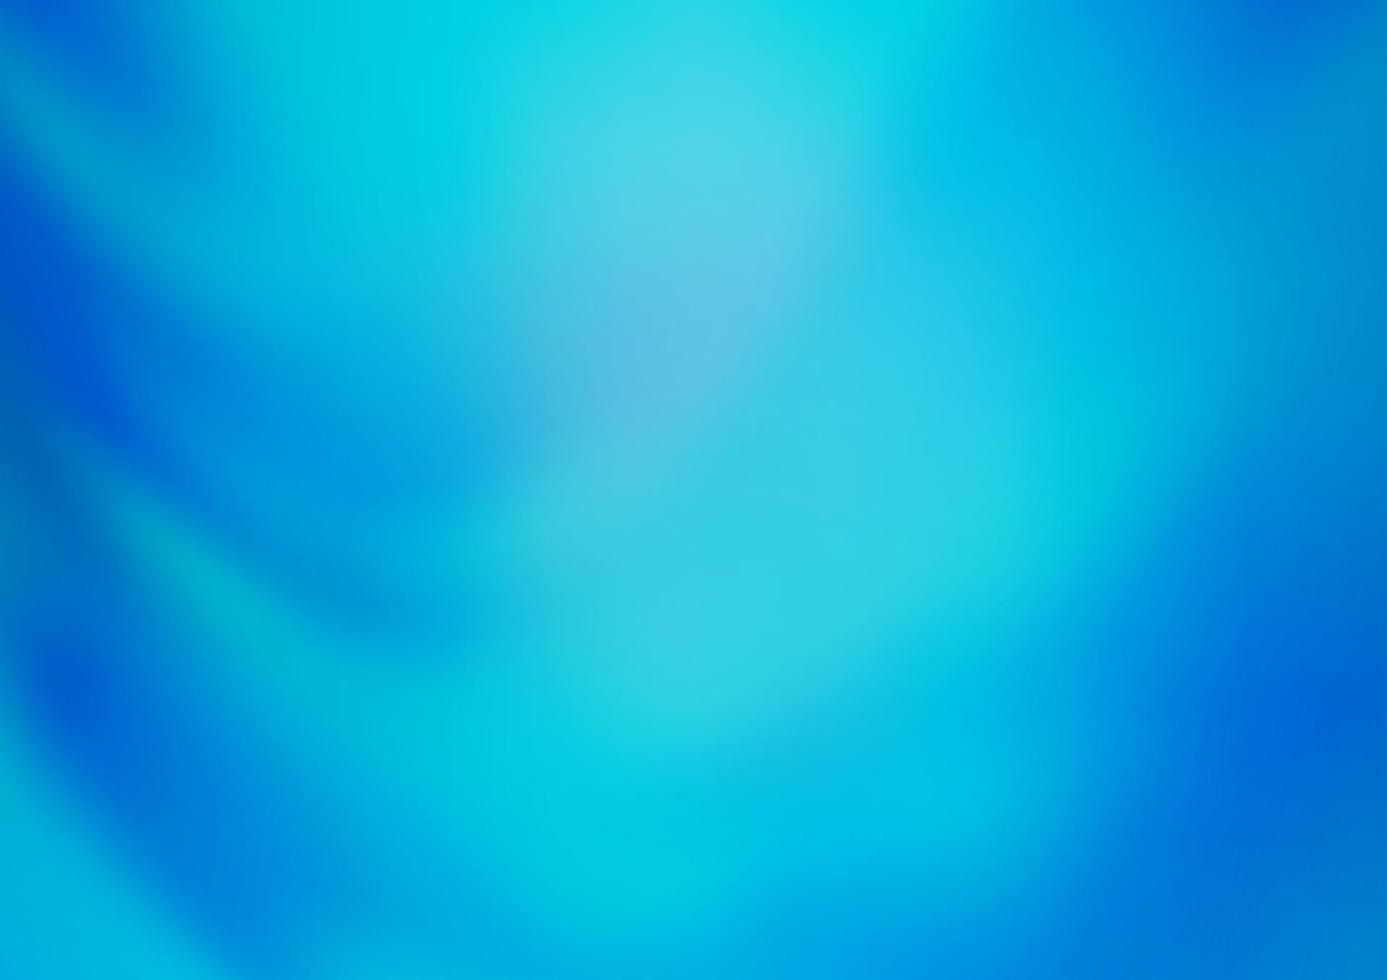 modelo borrado abstrato de vetor azul claro.